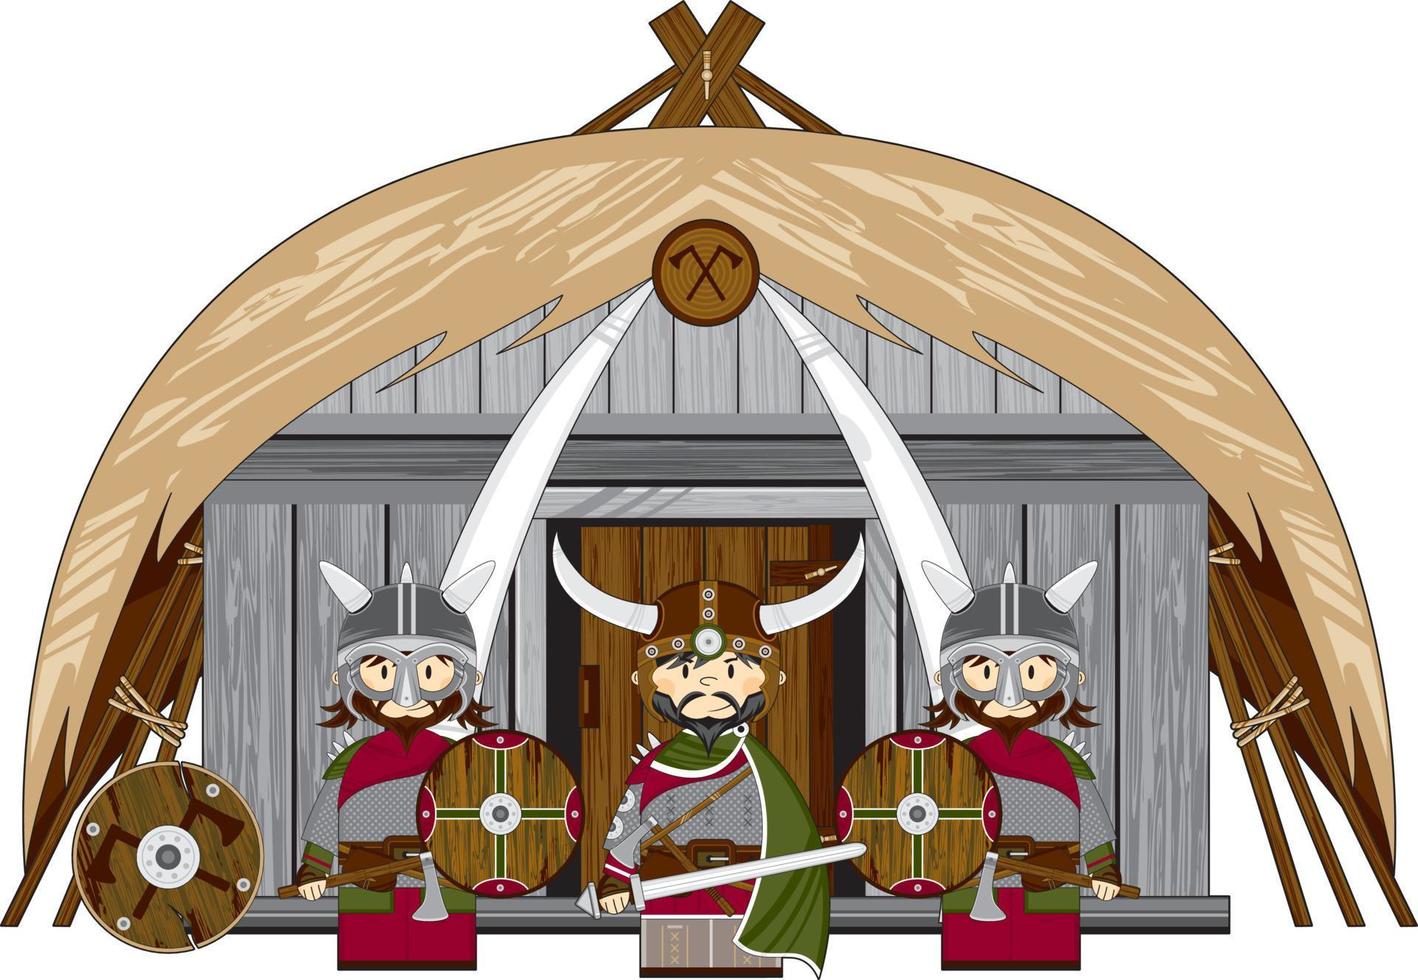 söt tecknad serie viking krigare på hemman Nordisk historia illustration vektor